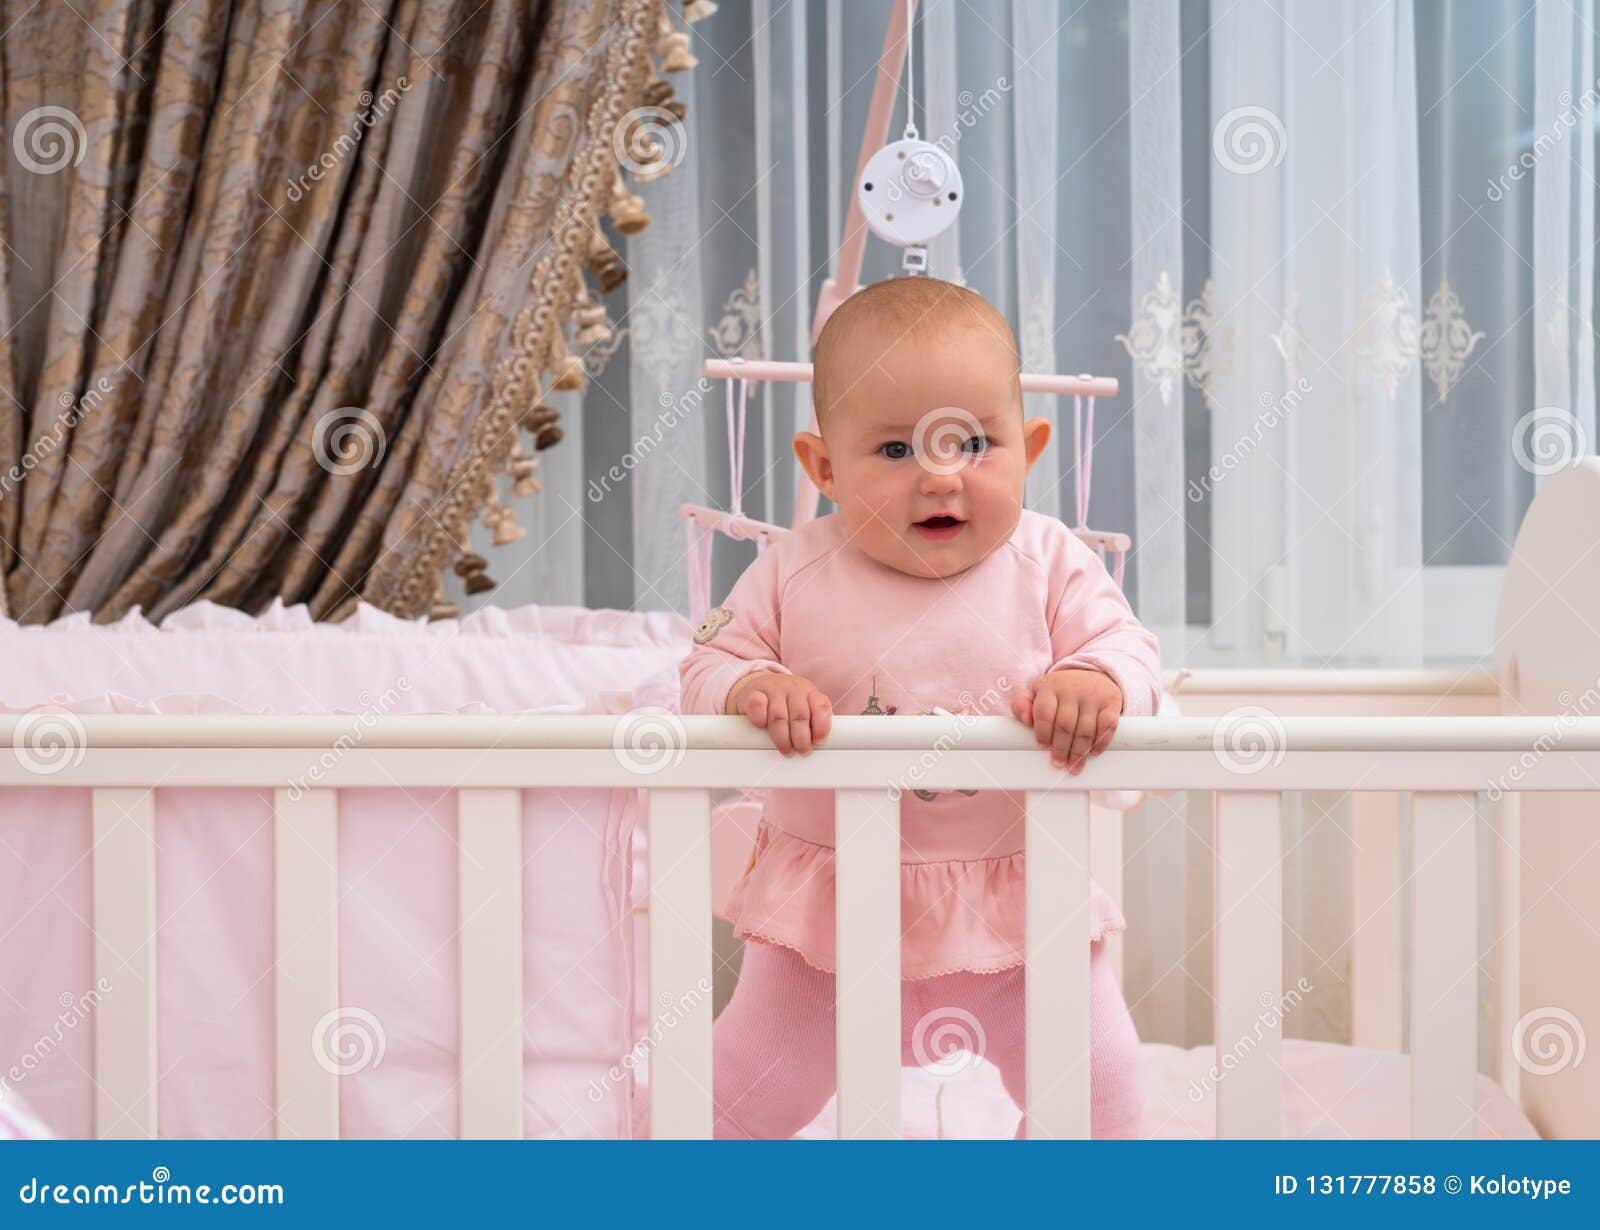 baby girl in crib